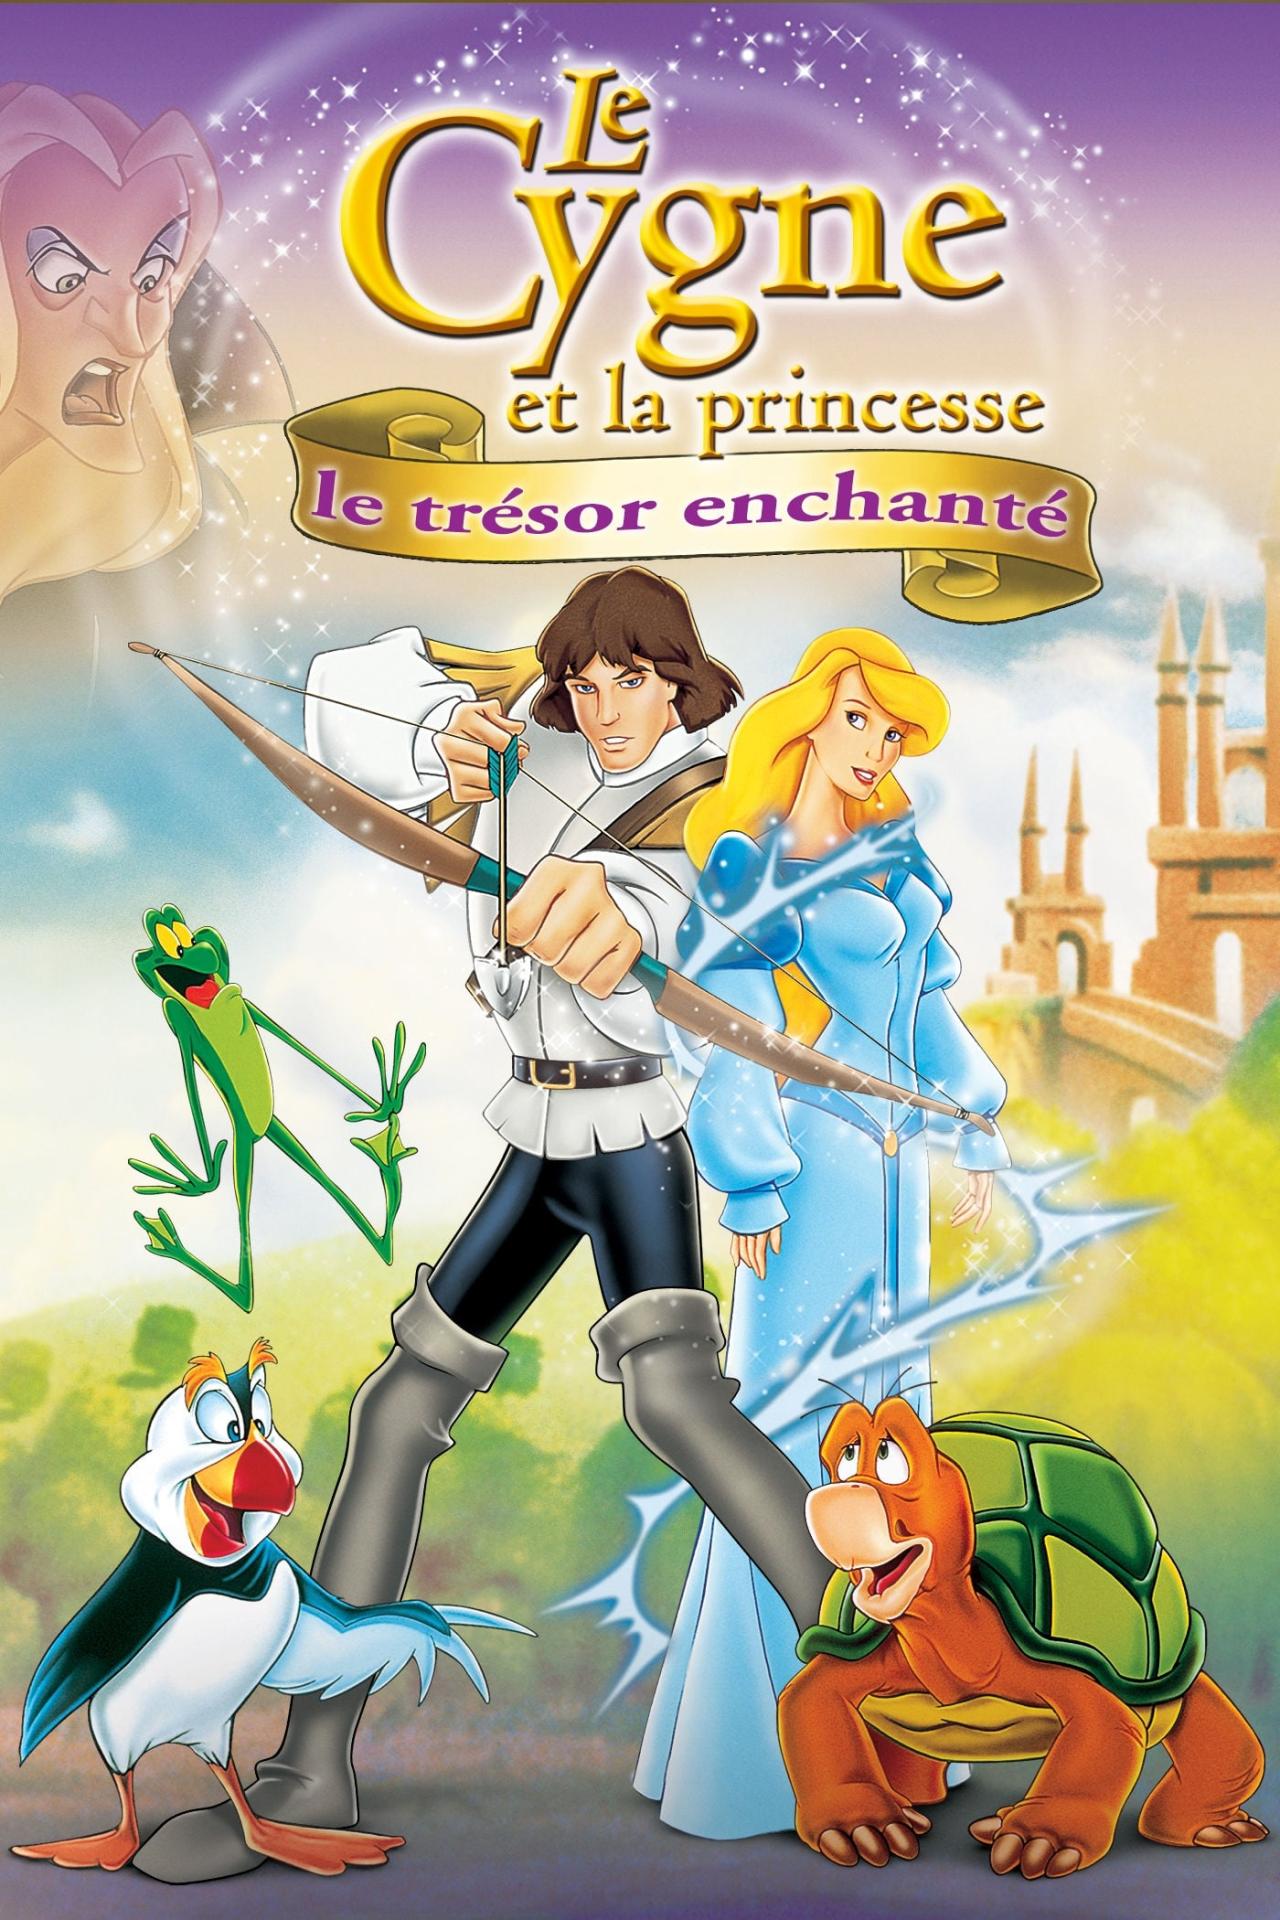 Le Cygne et la Princesse 3 : Le trésor enchanté est-il disponible sur Netflix ou autre ?